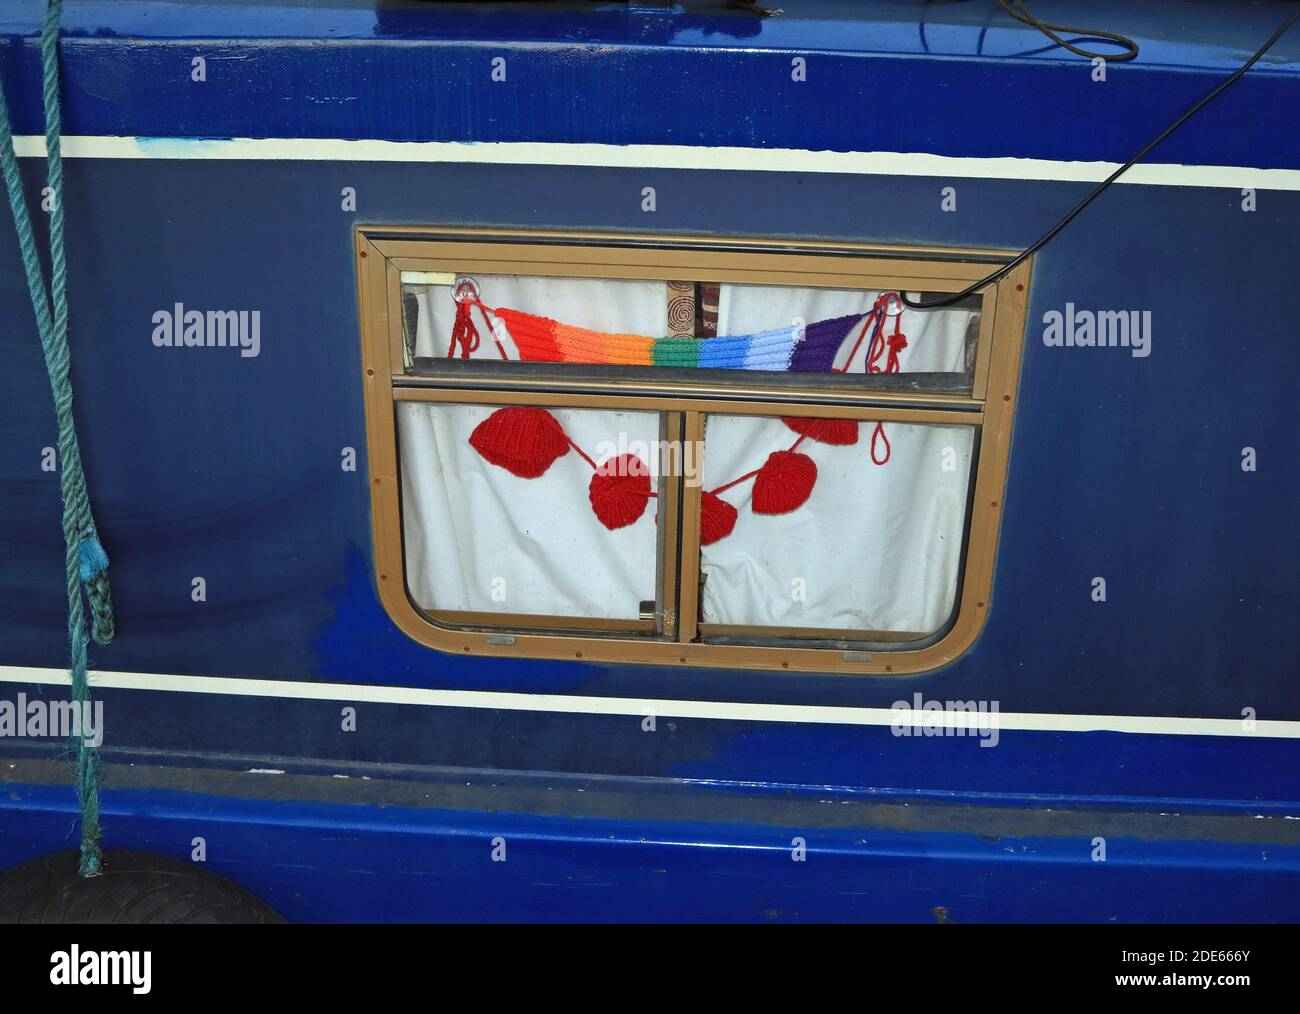 Coquelicots tricotés à la main et foulard arc-en-ciel dans un canal étroite fenêtre de bateau accrochée en souvenir des morts et En reconnaissance des héros déchus et du NHS Banque D'Images